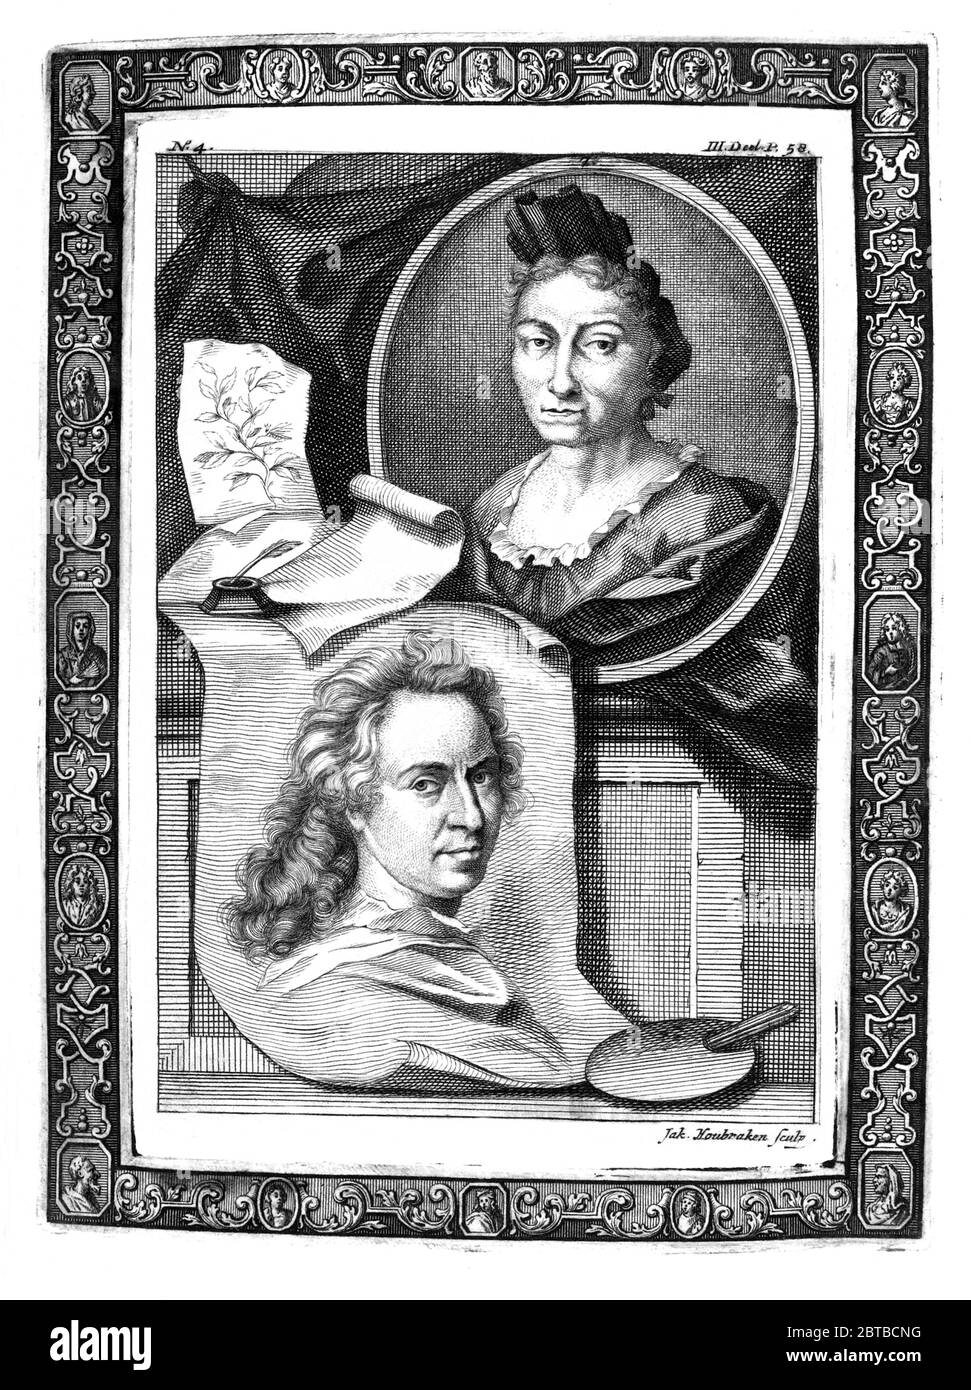 1729, GERMANIA : la pittrice naturalista tedesca, illustratrice scientifica e biologa MARIA SIBYLLA MERIAN ( 1647 - 1717 ). Il padre di Syblla era l'incisore e publisher svizzero Matthäus Merian ( Matteo , 1593 - 1650 ) il Vecchio . Ritratto di Jacobus Houbraken ( 1698 - 1780 ), dopo Georg Gsell, con il ritratto (sotto) del pittore portatore olandese David van der Plas ( 1647 - 1704 ). - SYBILLA - STORIA - foto storica storiche - ritratto - ritratto - NATURALISTA - NATURALISTA - SCIENZA - SCIENZA - BIOLOGIA - biologia - Illustratrice - illustratore - illustratore - pittore - pittrice Foto Stock